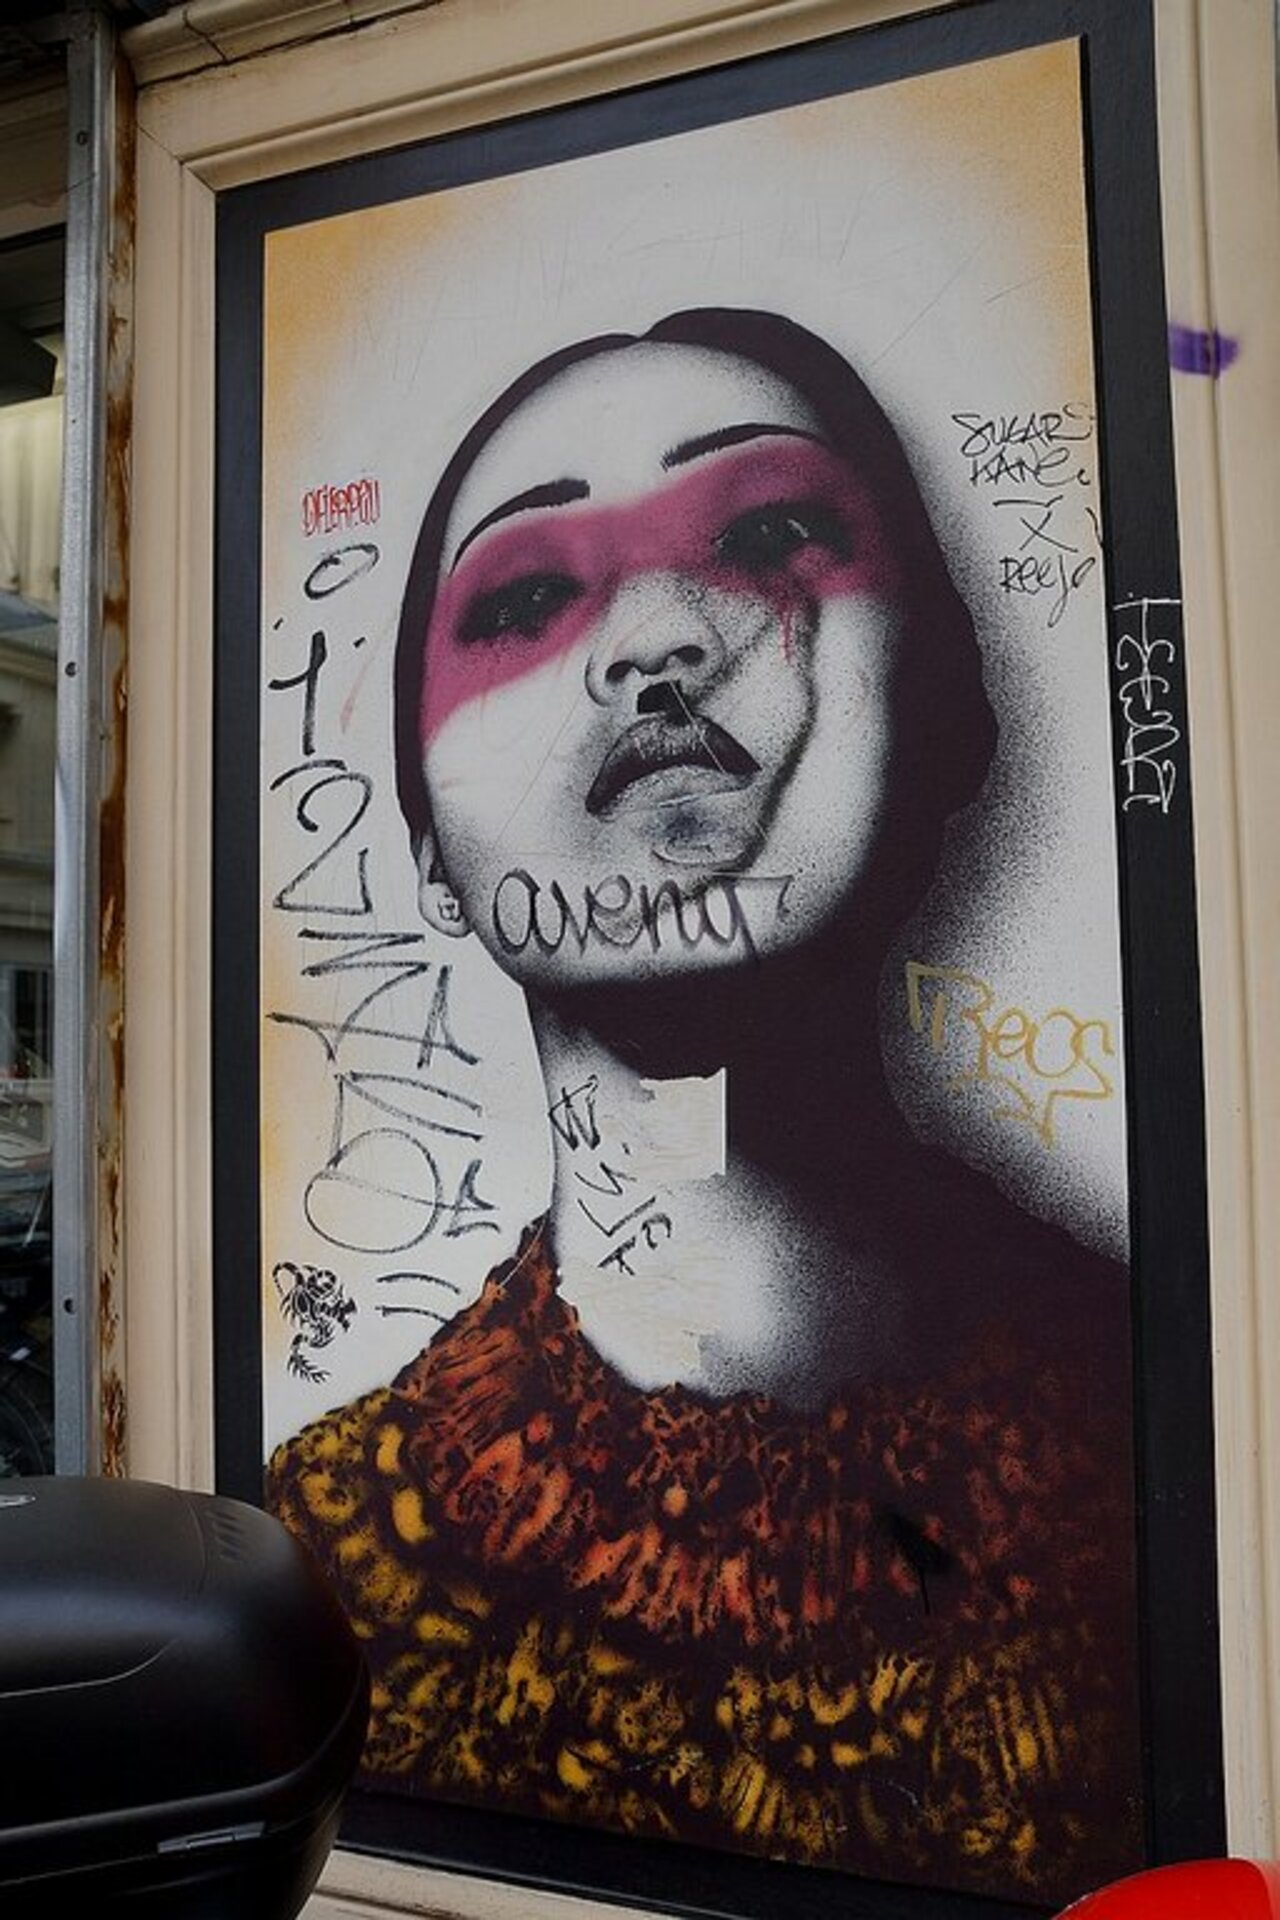 Street Art by anonymous in #Paris http://www.urbacolors.com #art #mural #graffiti #streetart https://t.co/y0BSP7aAXW